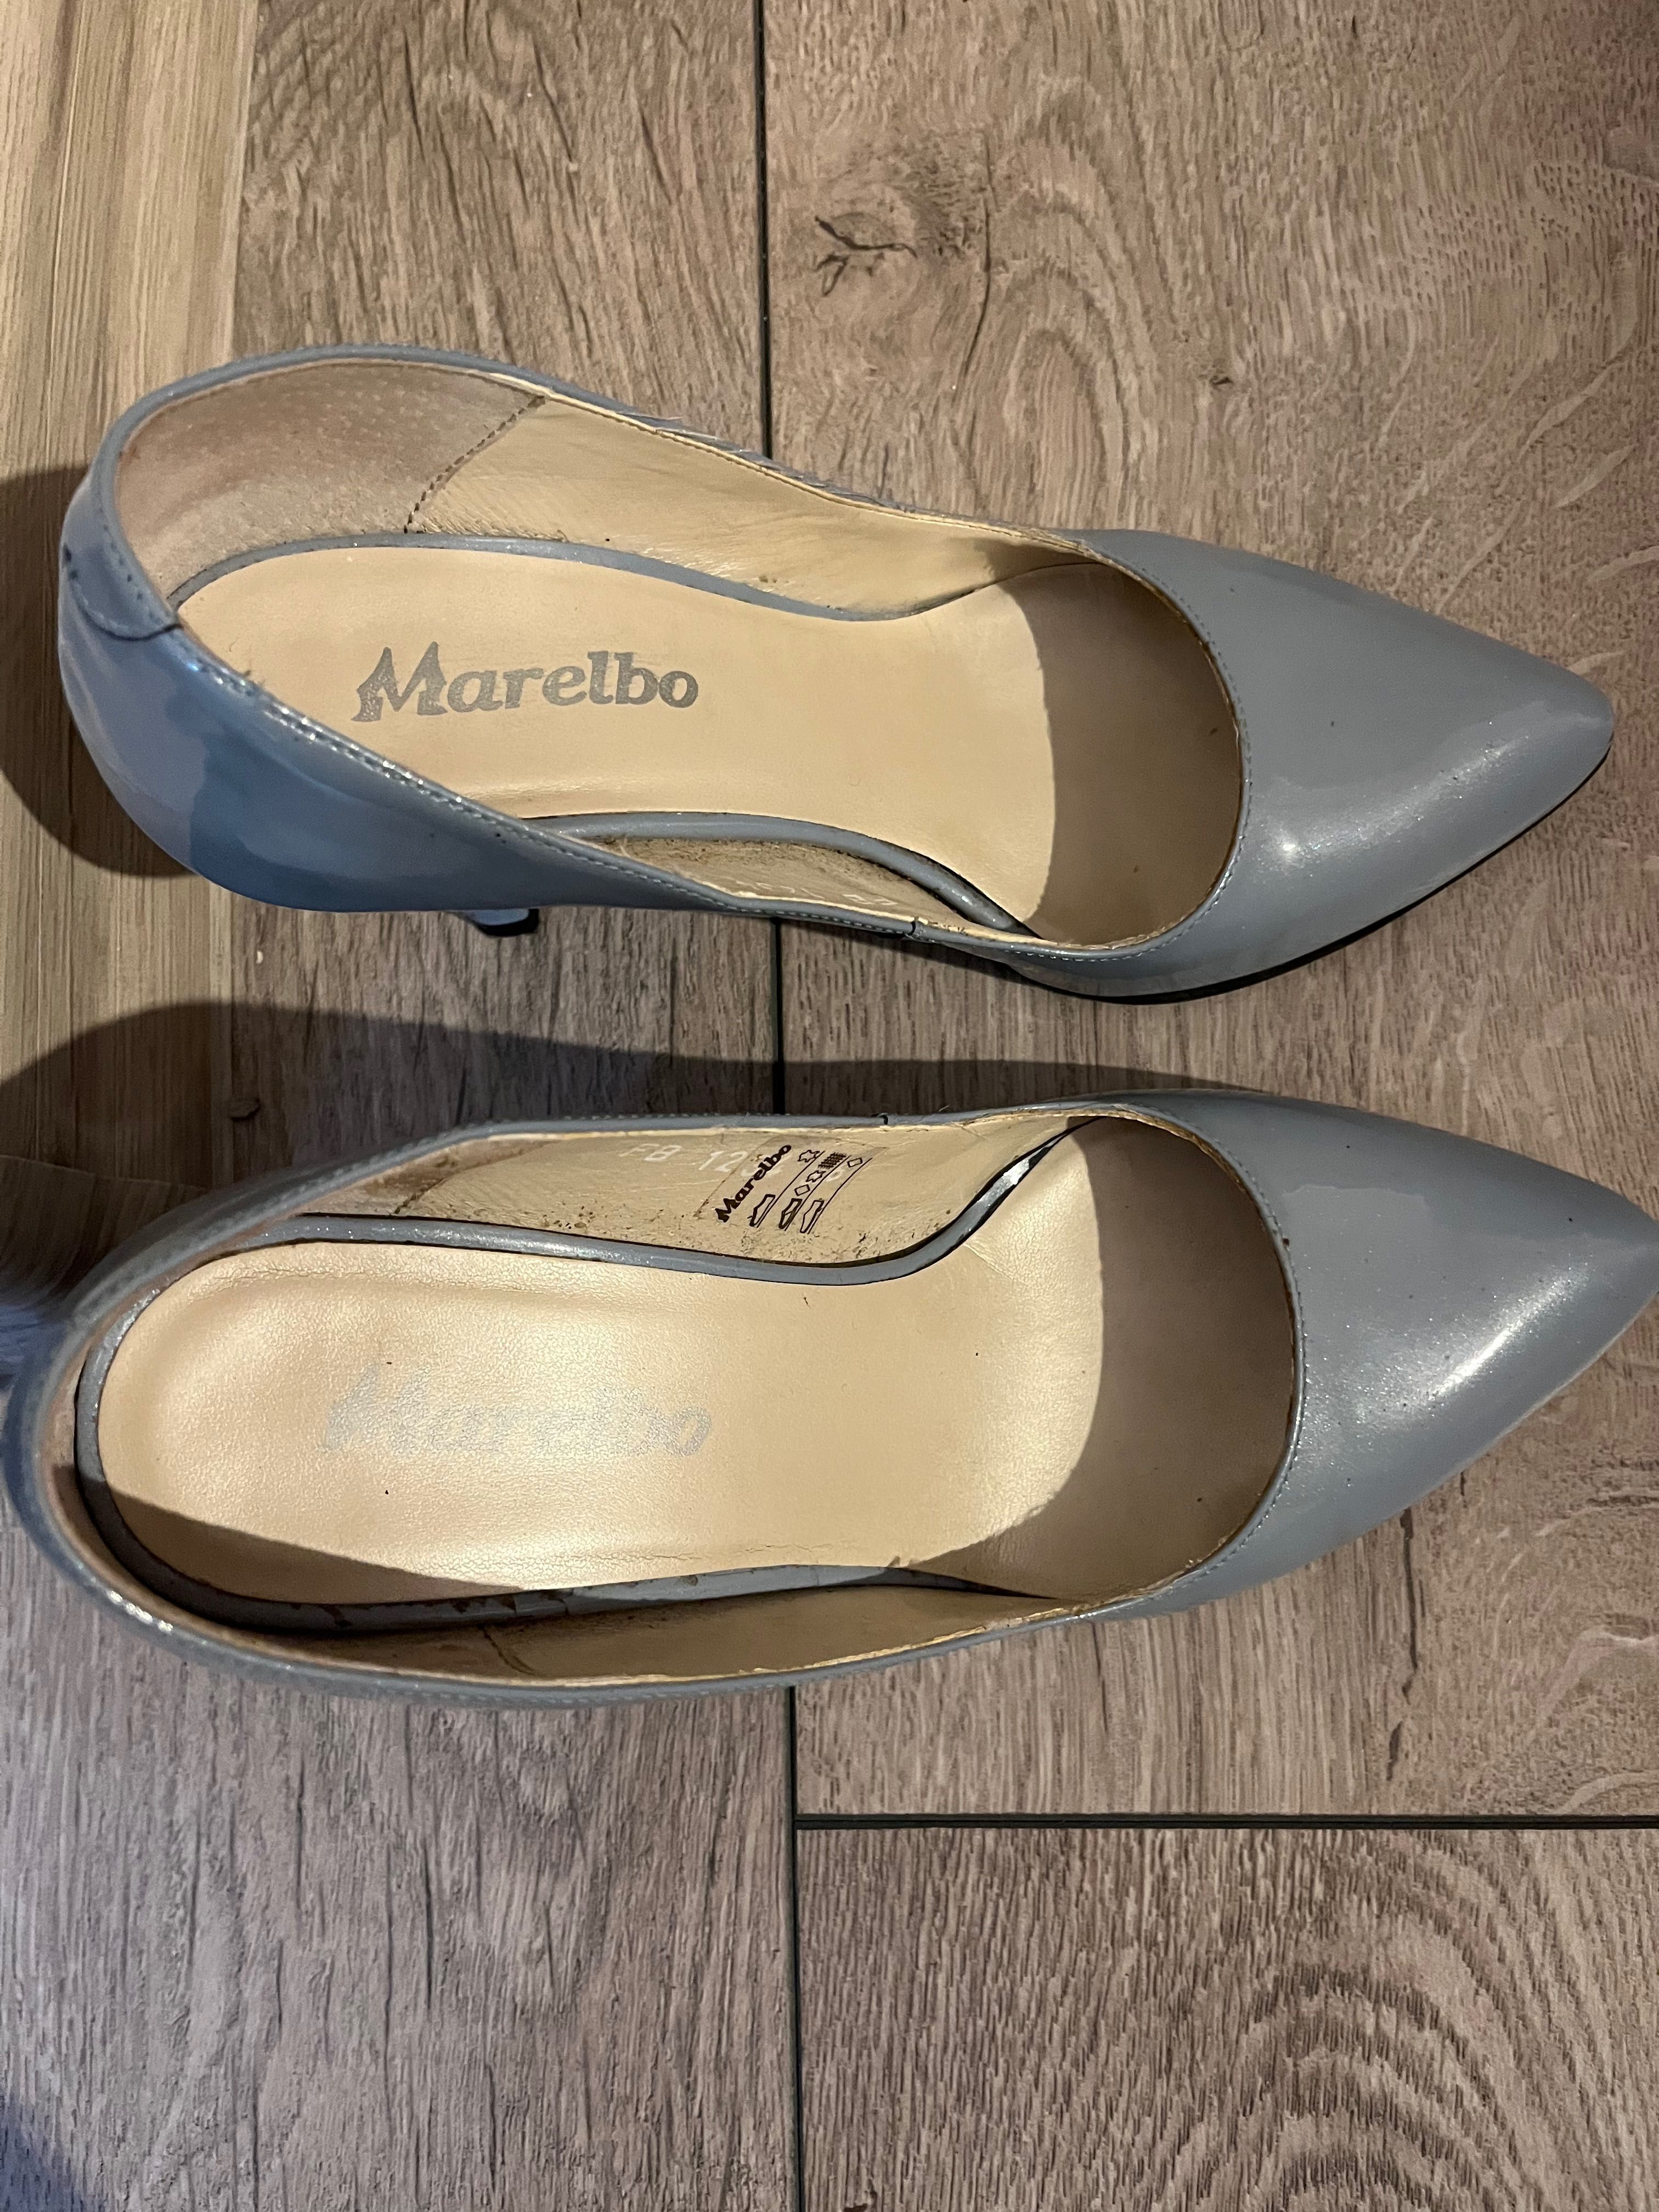 Pantofi eleganti dama din piele, Marelbo, stare buna, mărimea 36